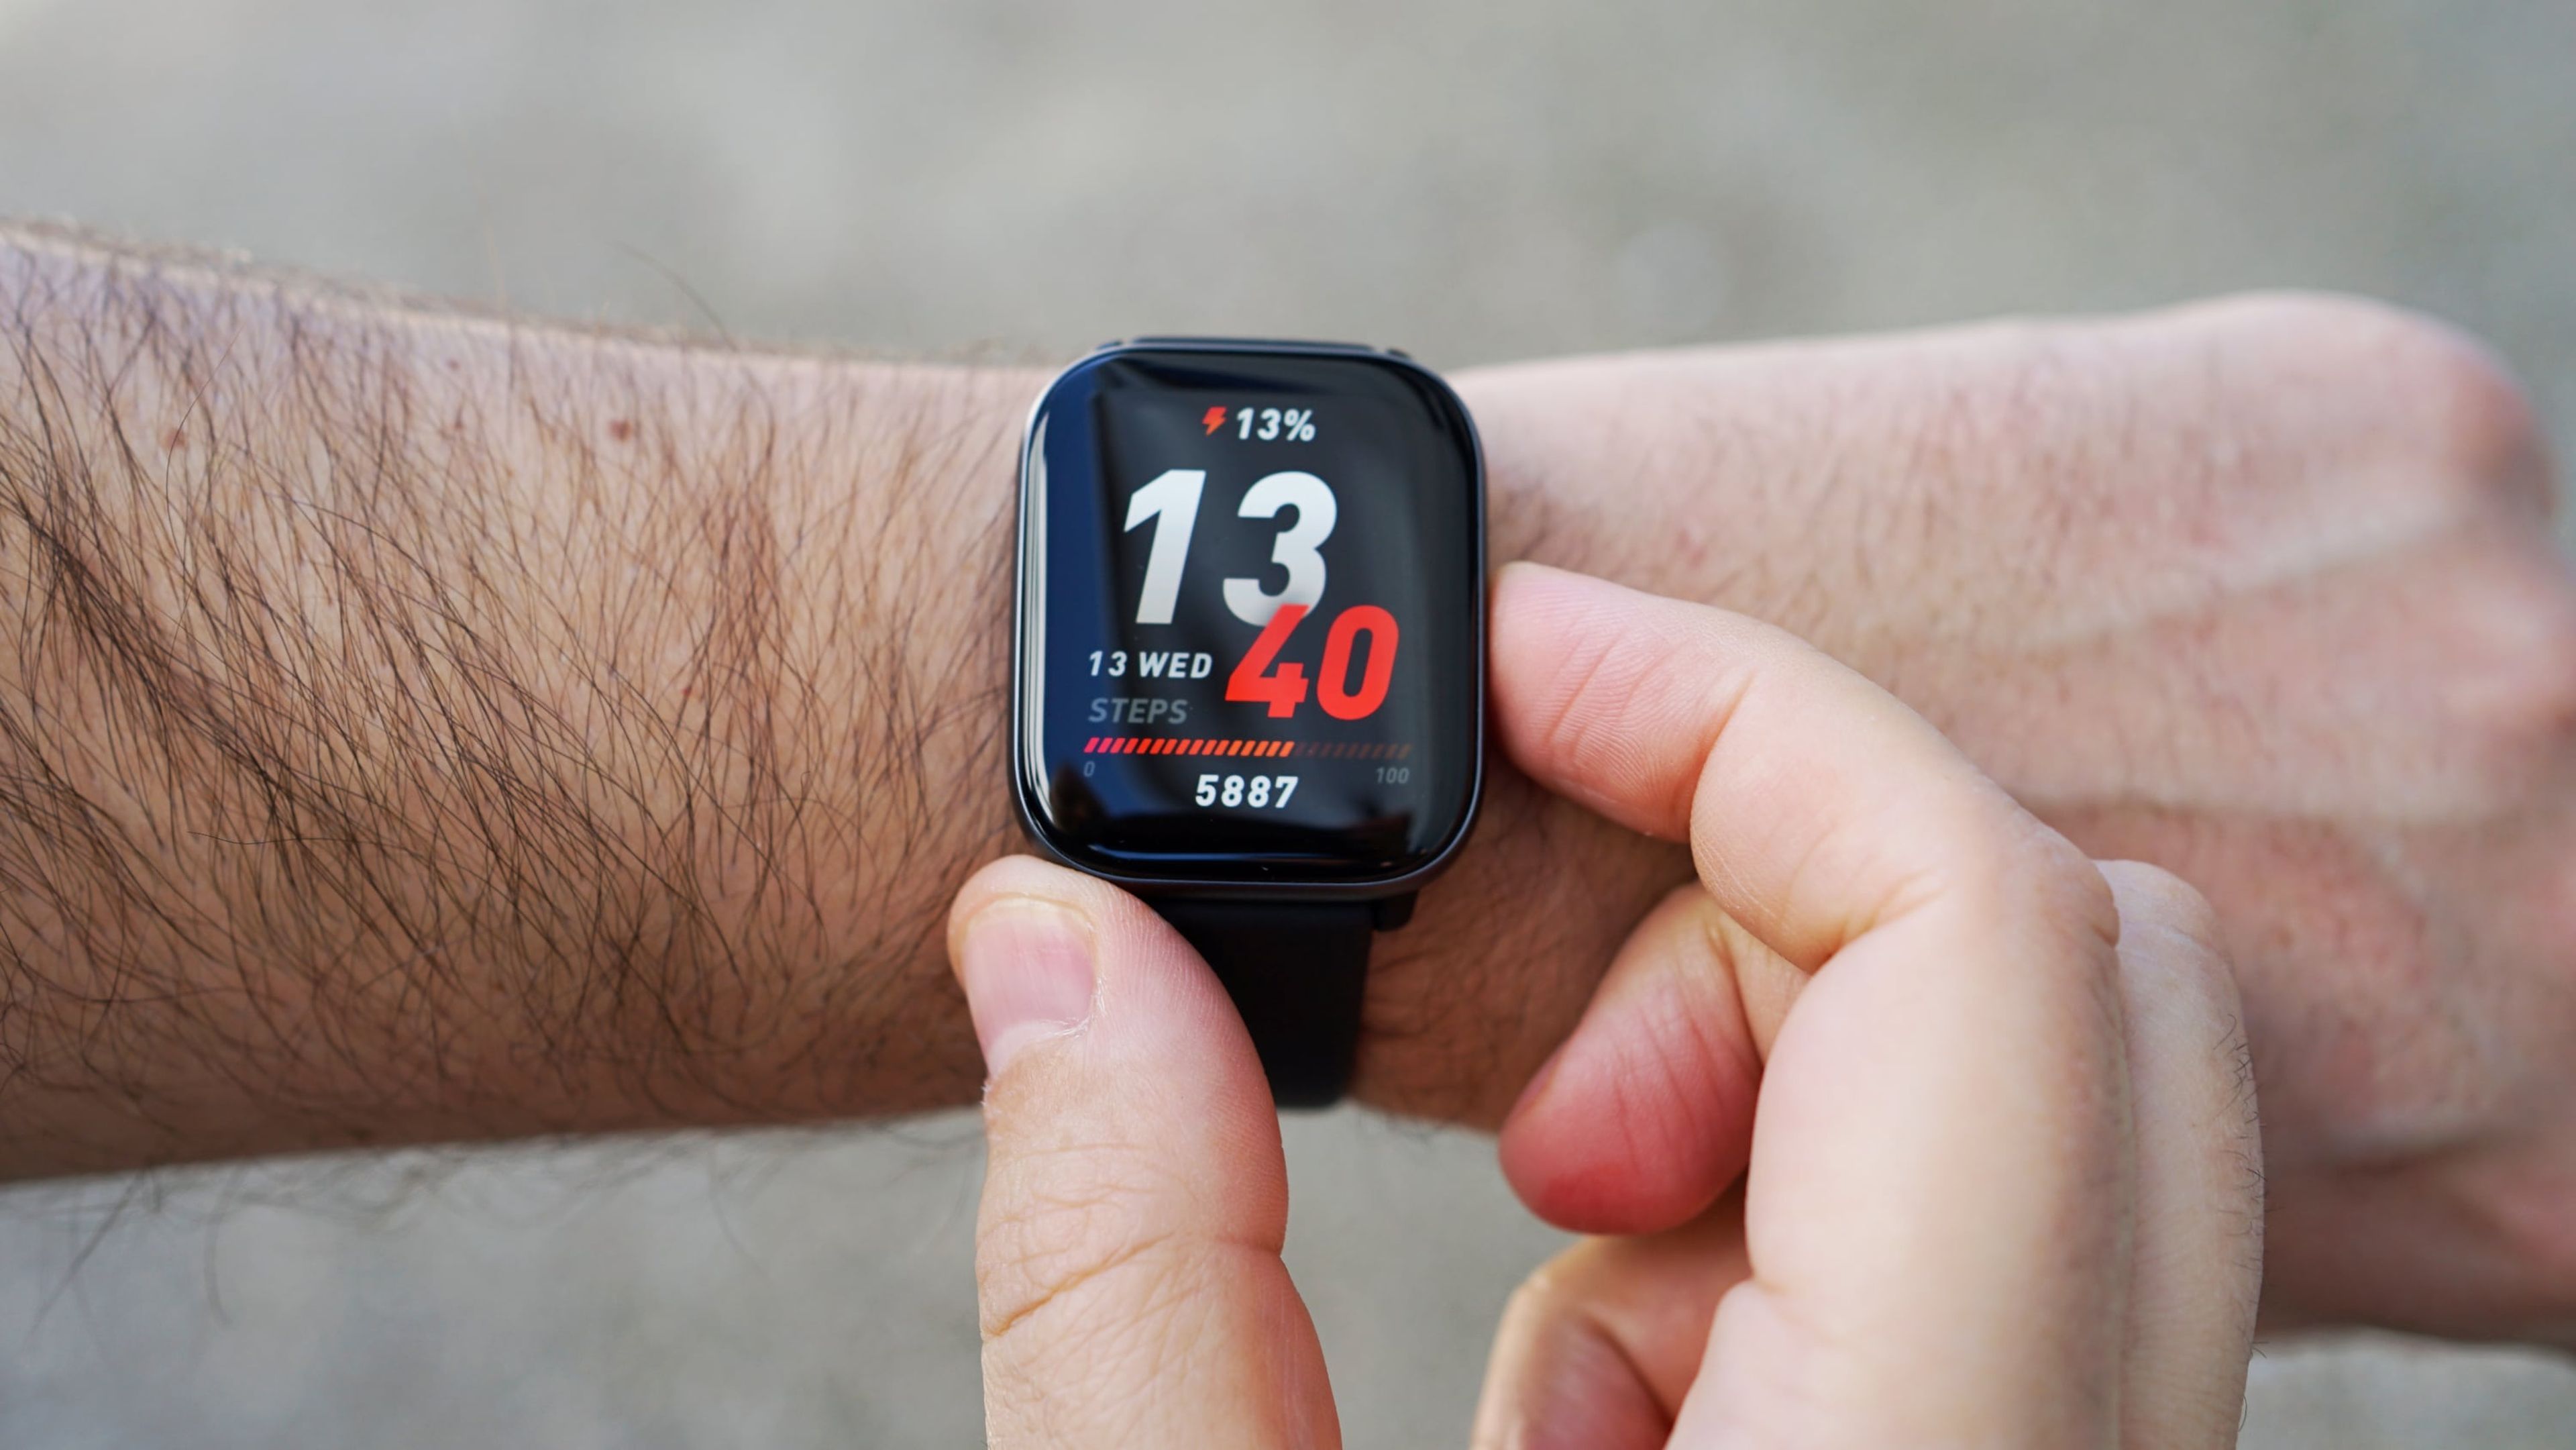 He probado el smartwatch Amazfit Active: esto es lo que debería ser un  reloj inteligente y barato para deportes